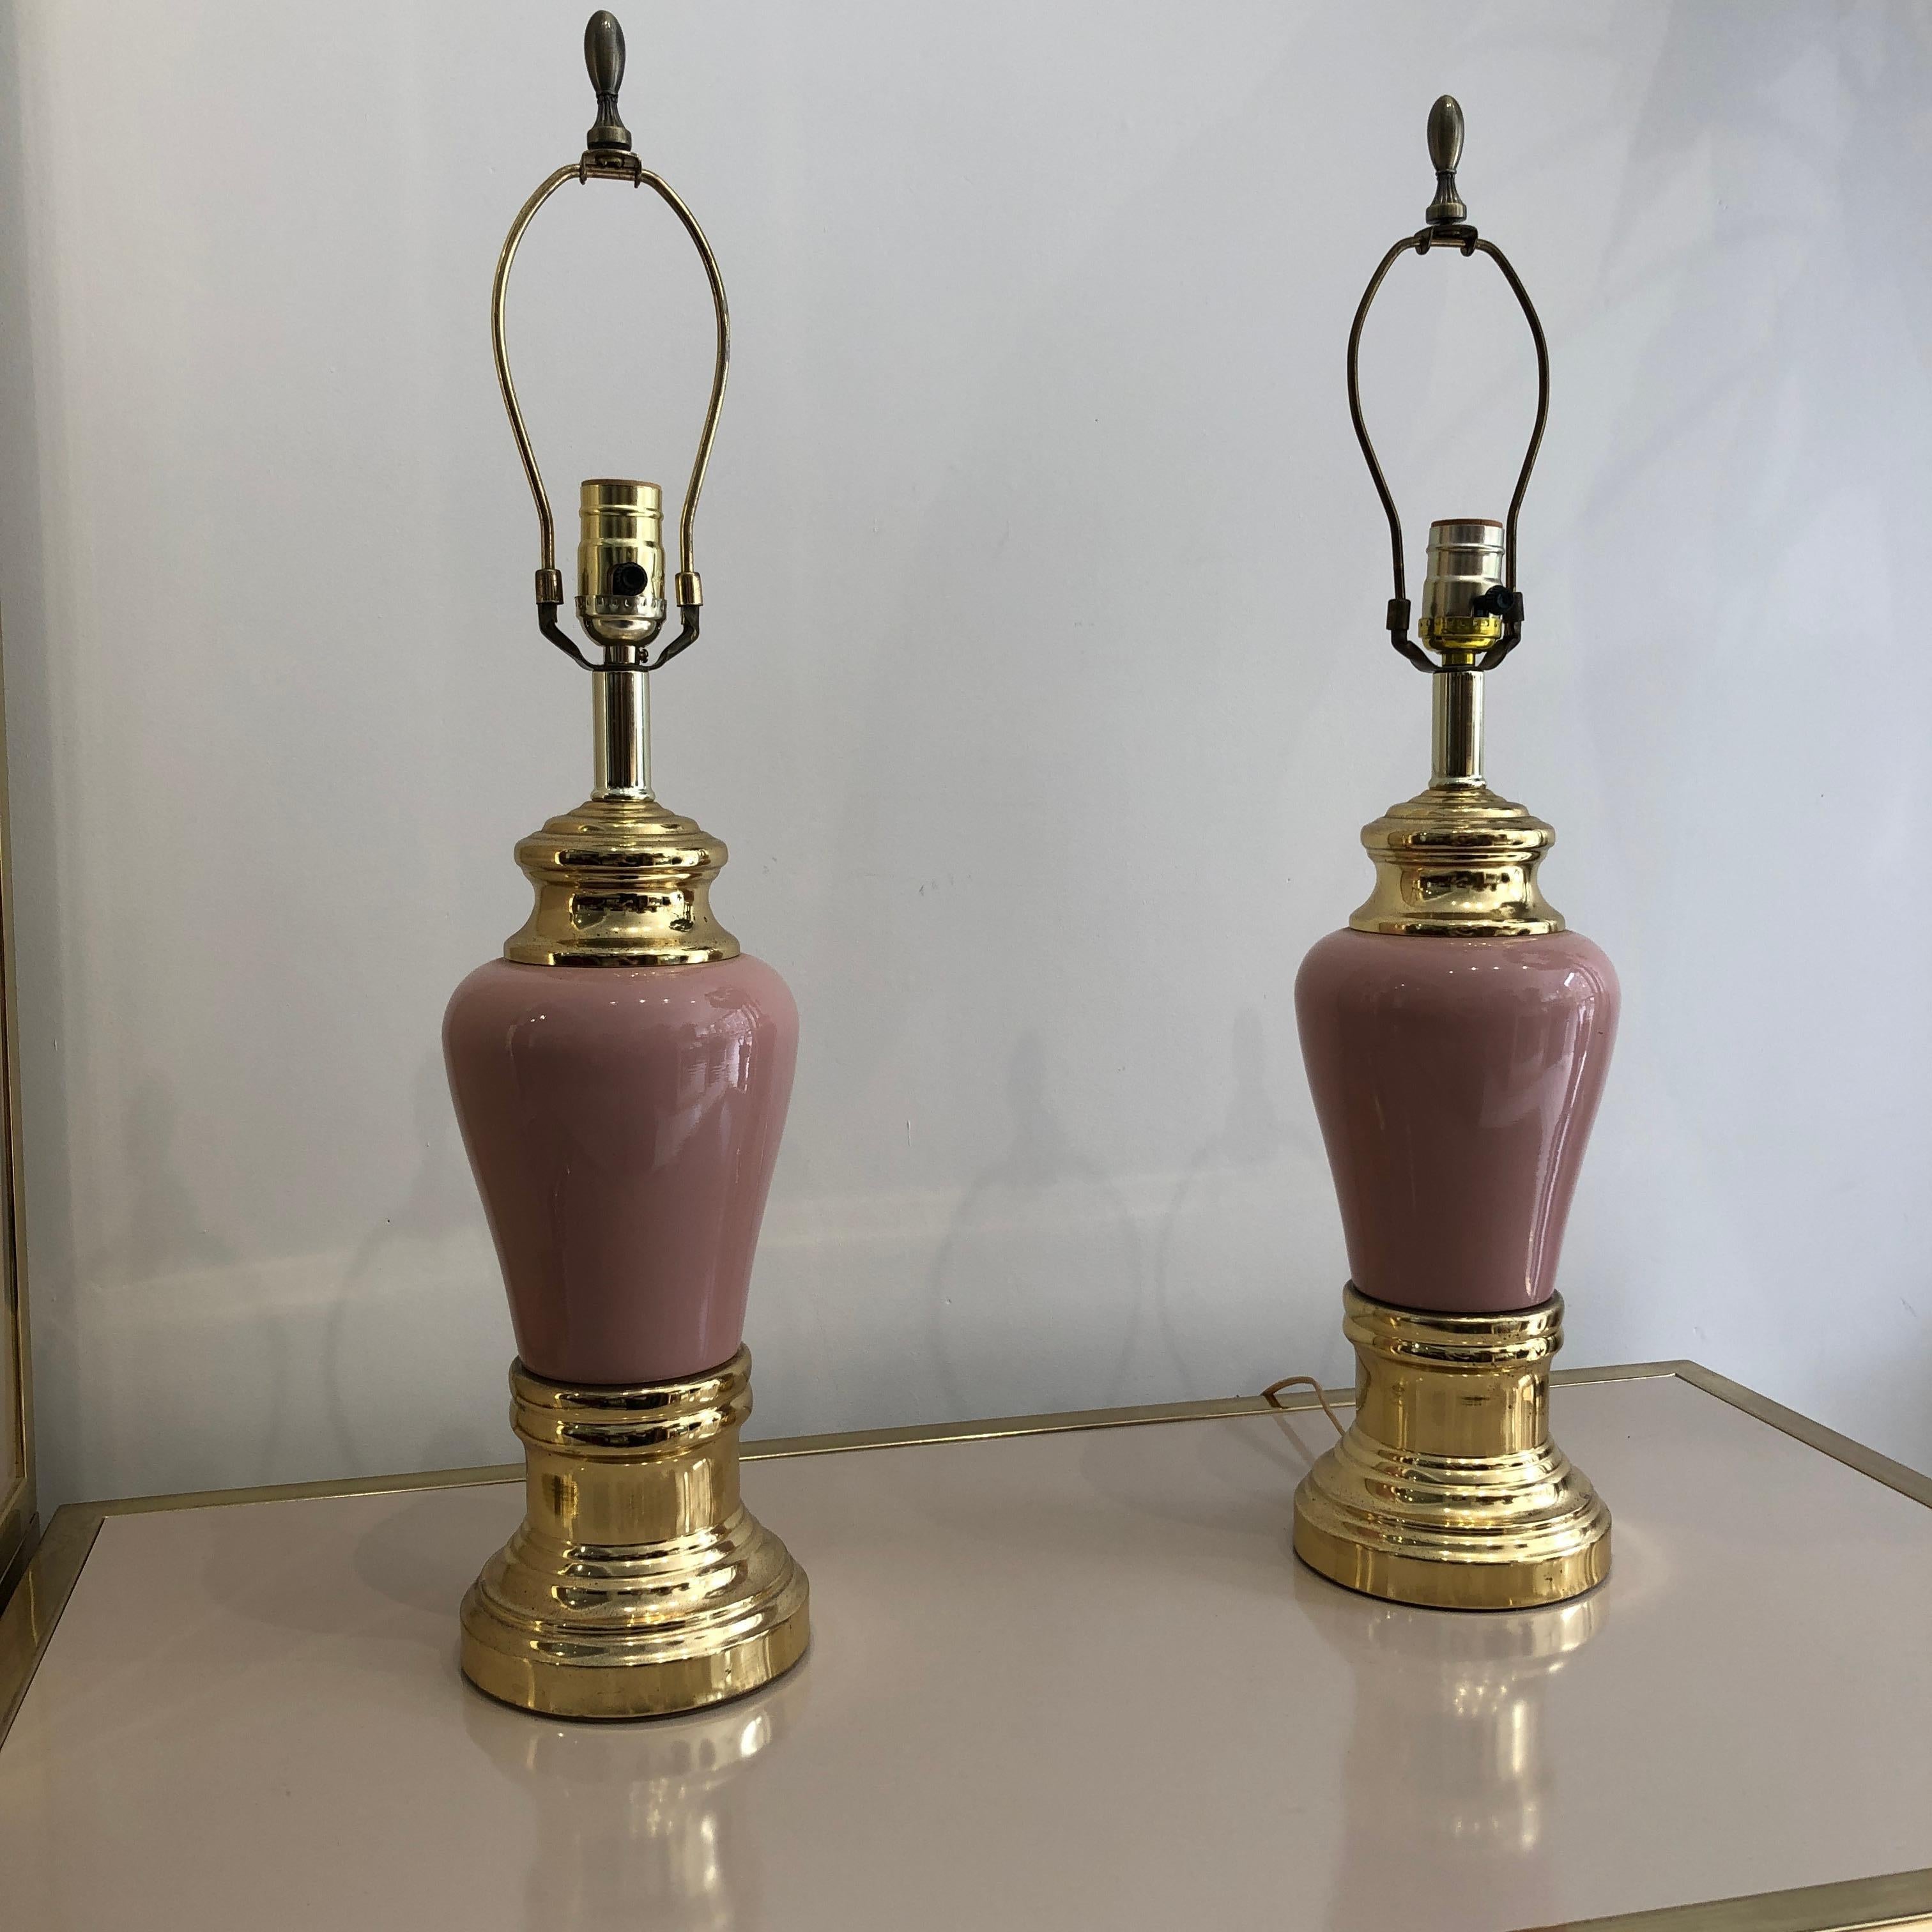 Hübsches Paar Keramik-Tischlampen in Millennial Staub rosa Körper und Messing goldenen Basis. Die Lampen wirken wie eine Skulptur mit Schmuckelementen, was ihnen einen glamourösen Look verleiht. 
Mit den richtigen Farbtönen und in einer modernen